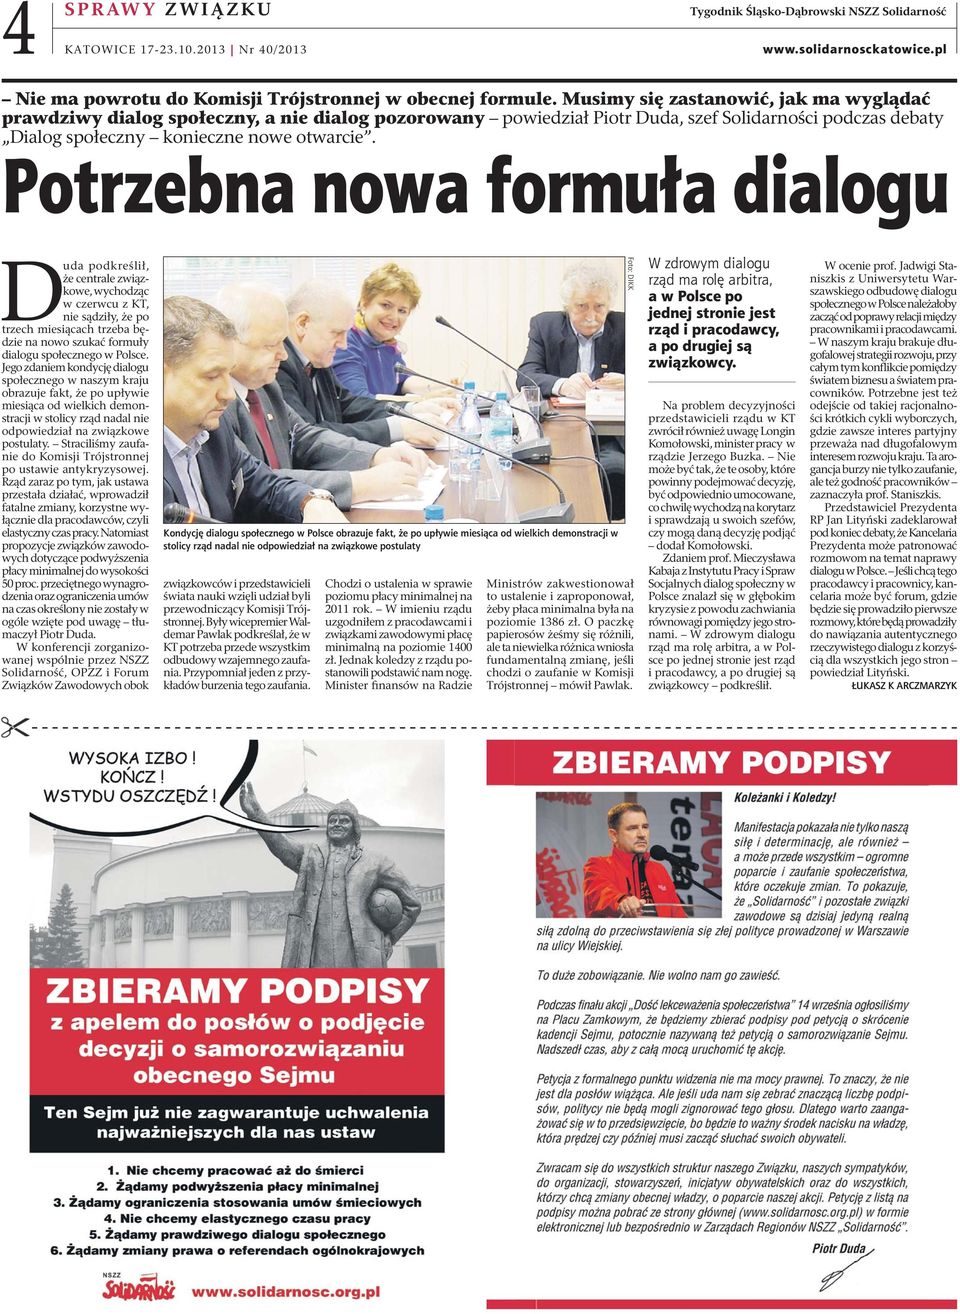 Potrzebna nowa formuła dialogu Duda podkreślił, że centrale związkowe, wychodząc w czerwcu z KT, nie sądziły, że po trzech miesiącach trzeba będzie na nowo szukać formuły dialogu społecznego w Polsce.